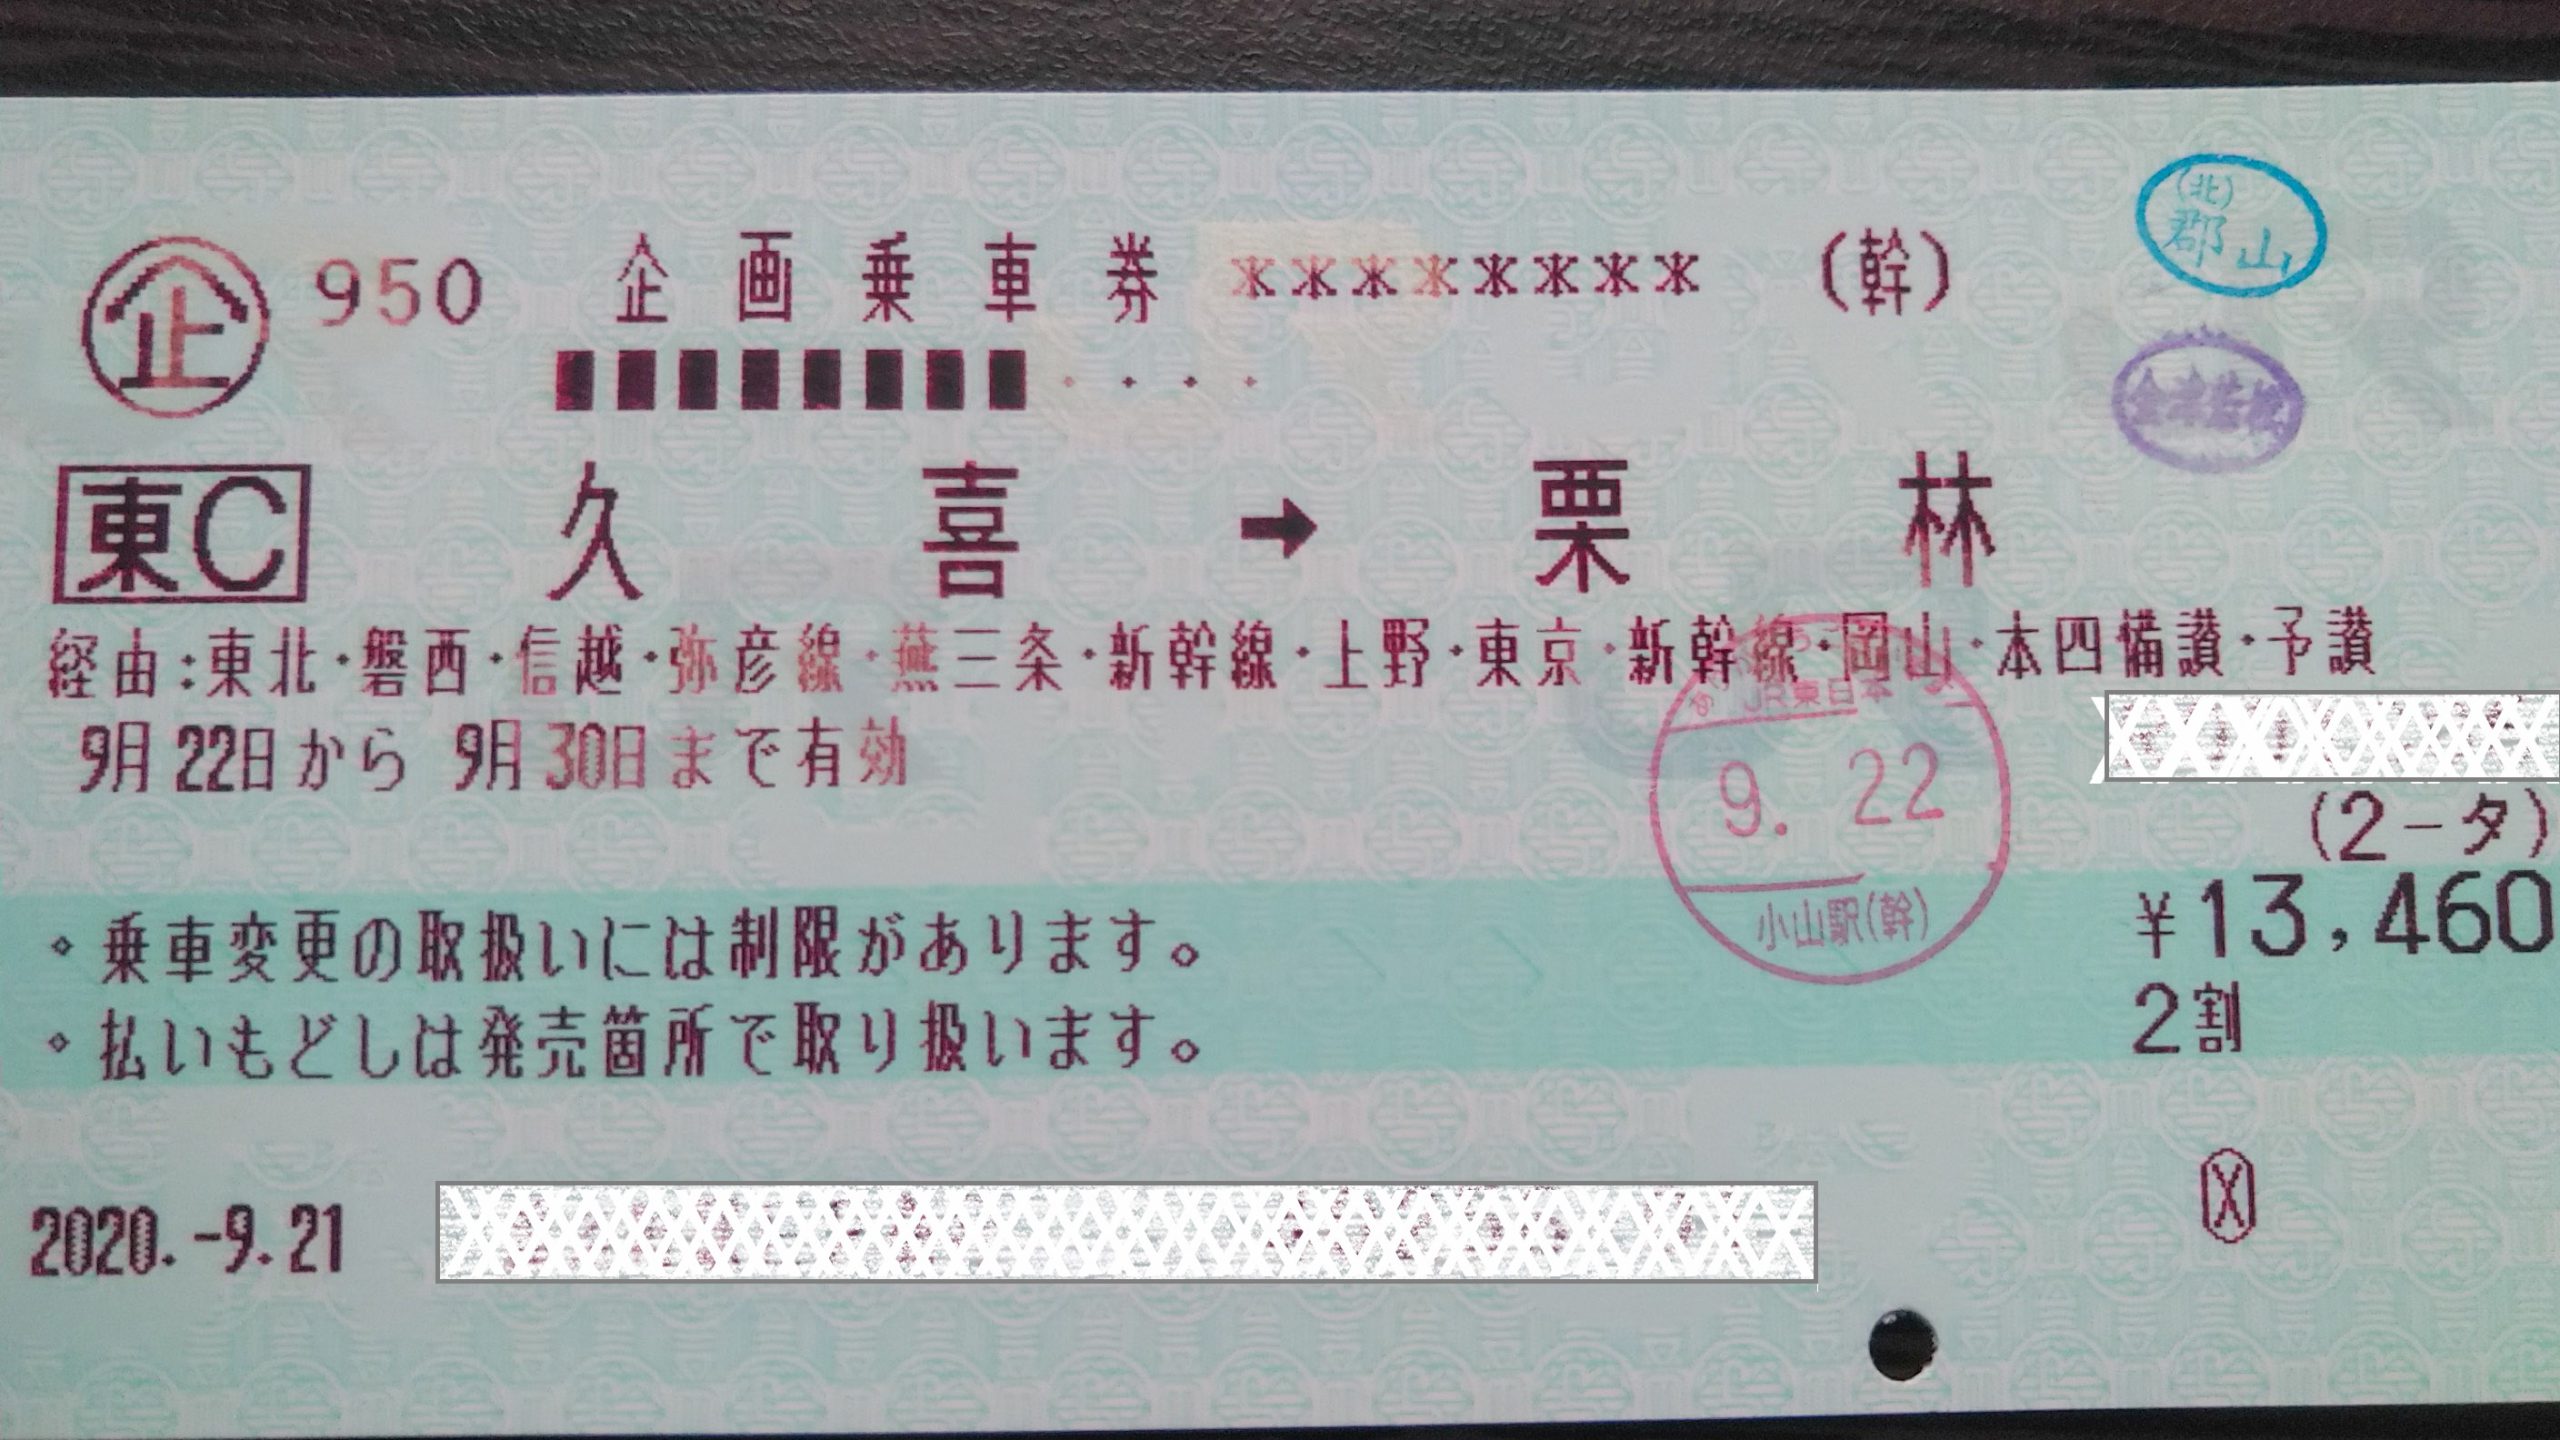 マルスL型券 長野→名古屋市内 乗車券 使用済み - 鉄道